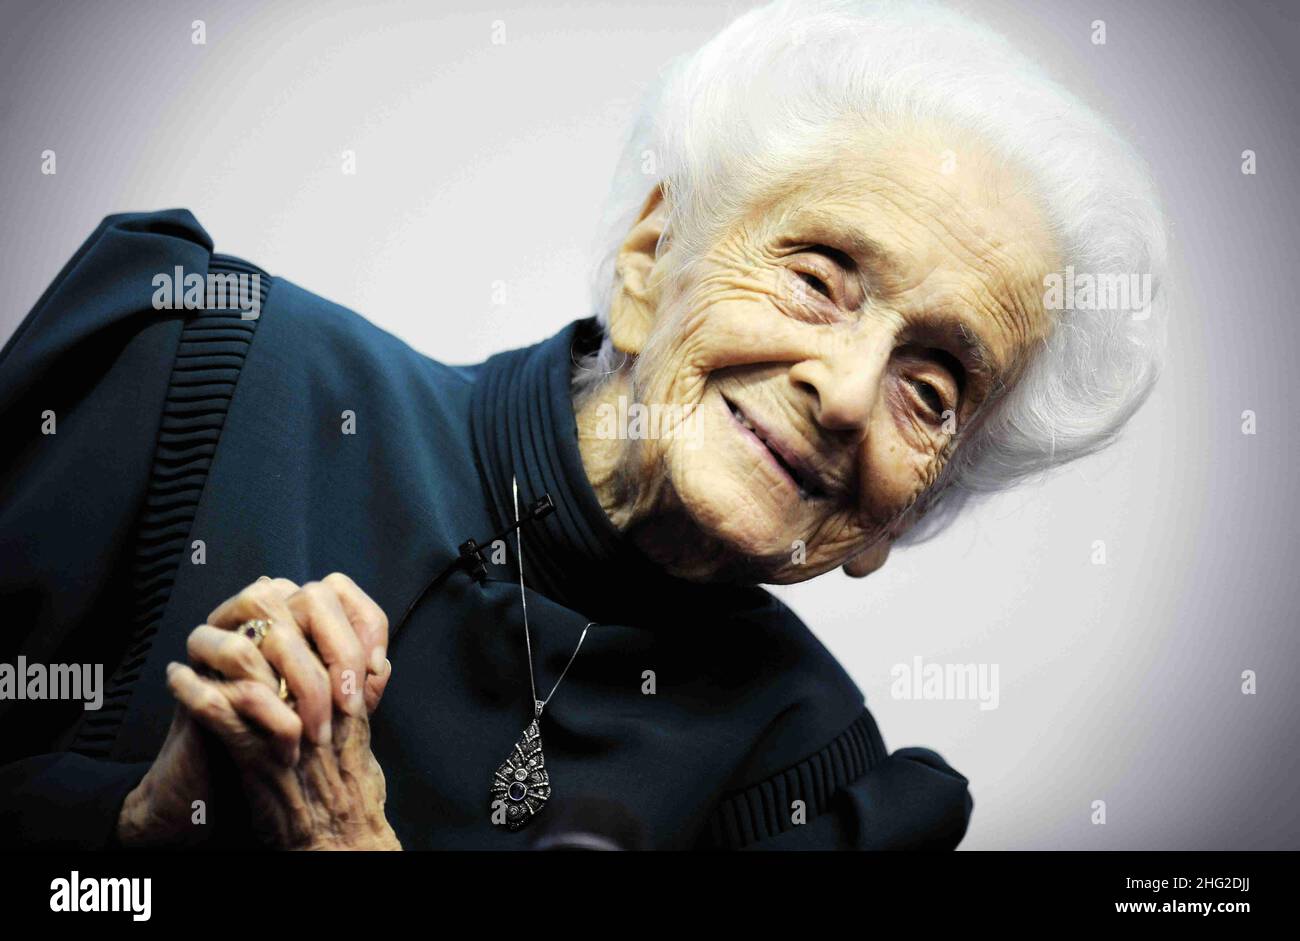 Rita Levi-Montalcini, lauréate du prix Nobel, avec des étudiants de l'Université de Turin, en Italie.Rita Levi-Montalcini est une neurologue italienne qui, avec son collègue Stanley Cohen, a reçu le prix Nobel de physiologie ou de médecine en 1986 pour sa découverte du facteur de croissance nerveuse (FGN).Aujourd'hui, elle est la plus ancienne lauréate vivante du prix Nobel et la première à avoir atteint l'anniversaire de 100th. Banque D'Images